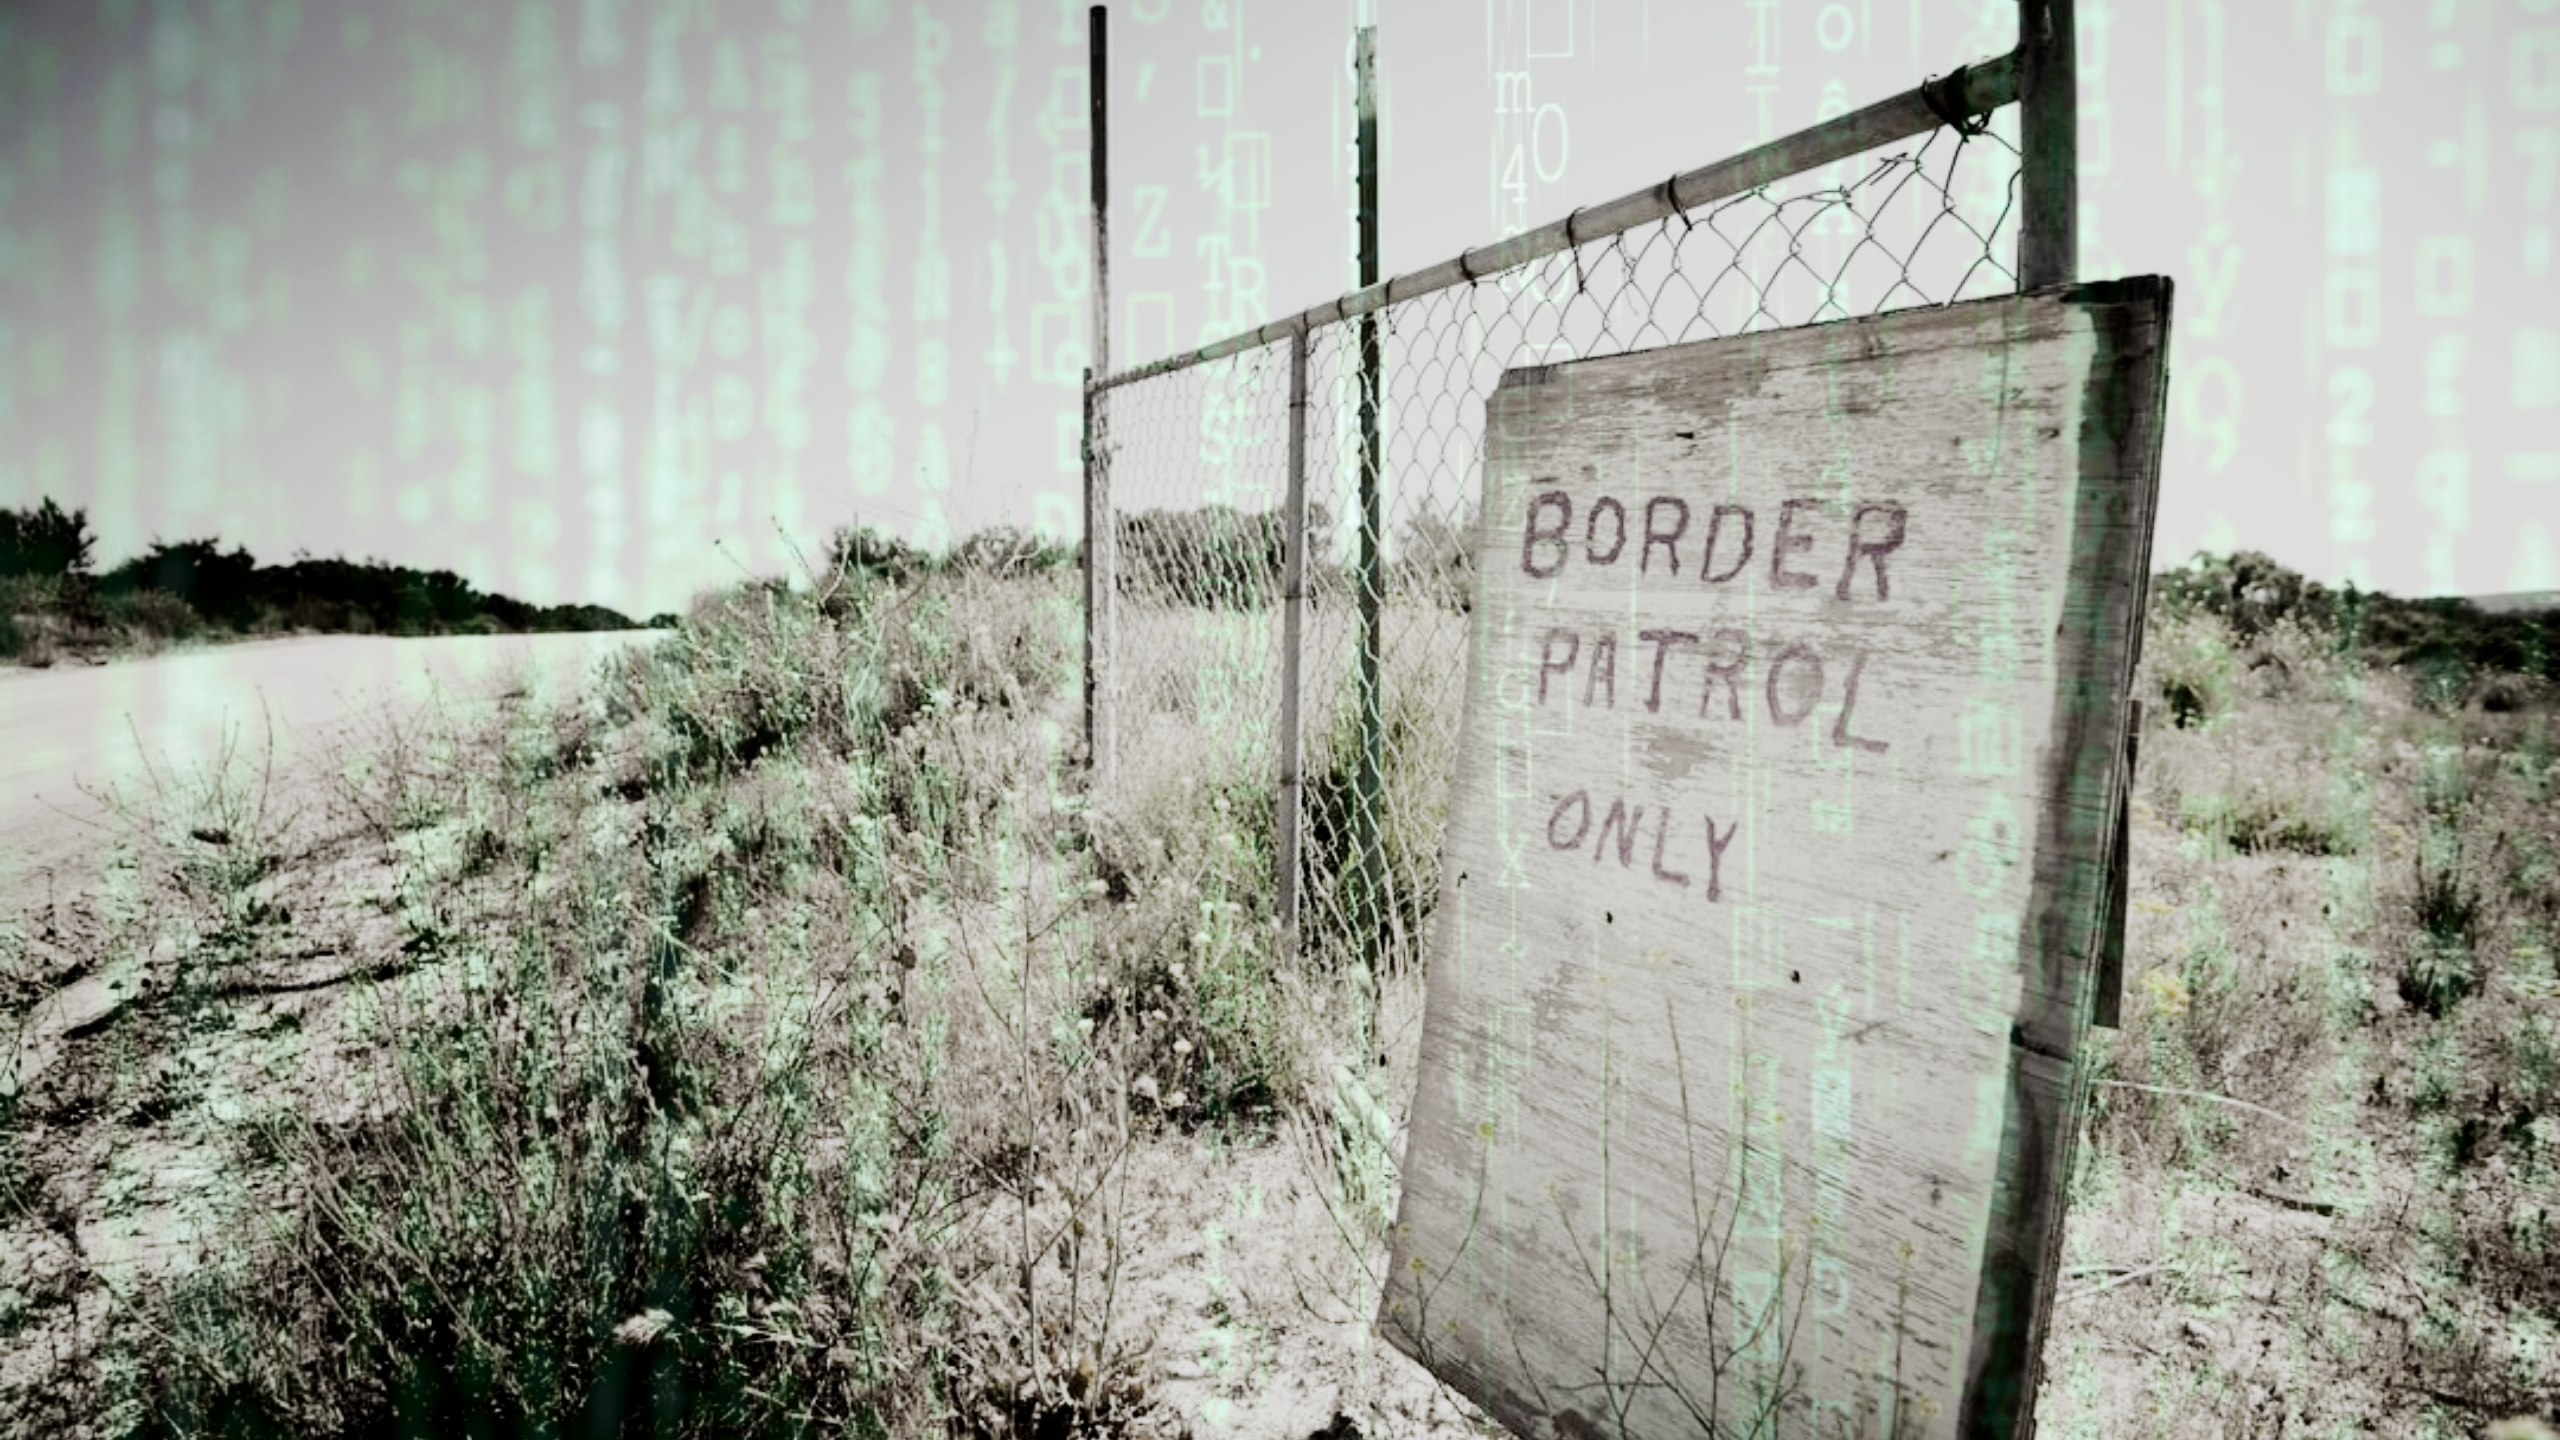 Une clôture désolée avec un panneau indiquant 'Border Patrol Only' avec superposition de code vert